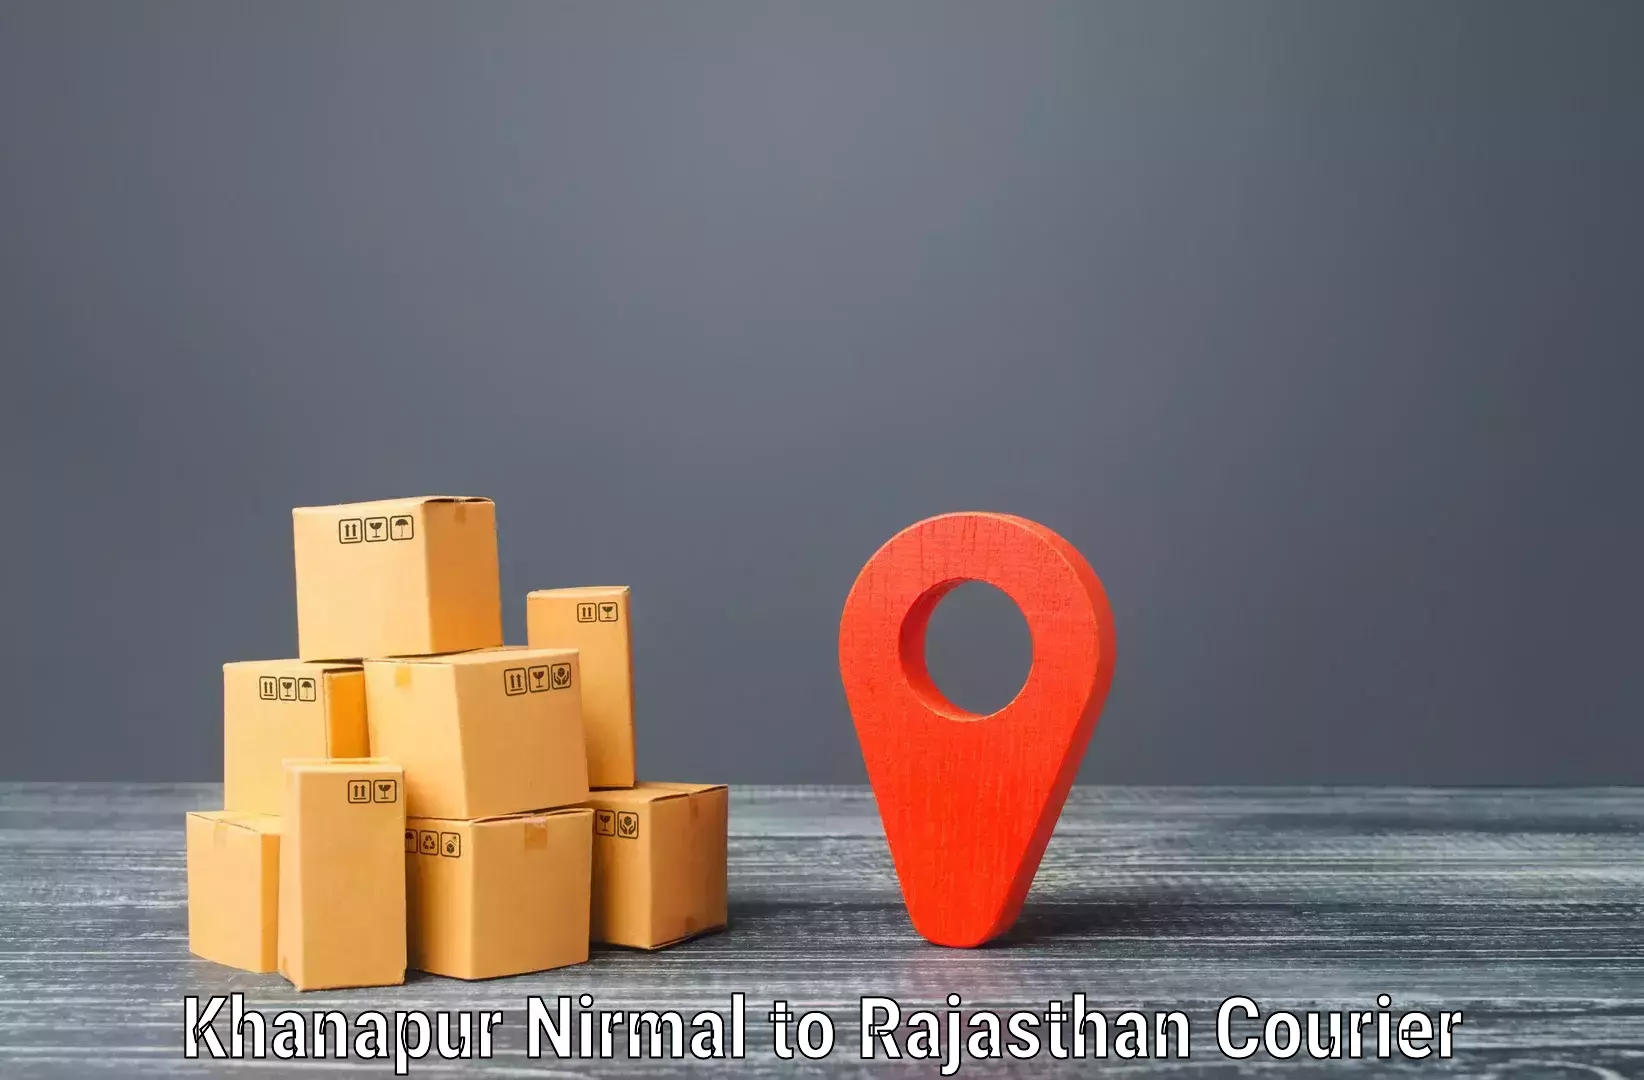 International parcel service Khanapur Nirmal to Achrol